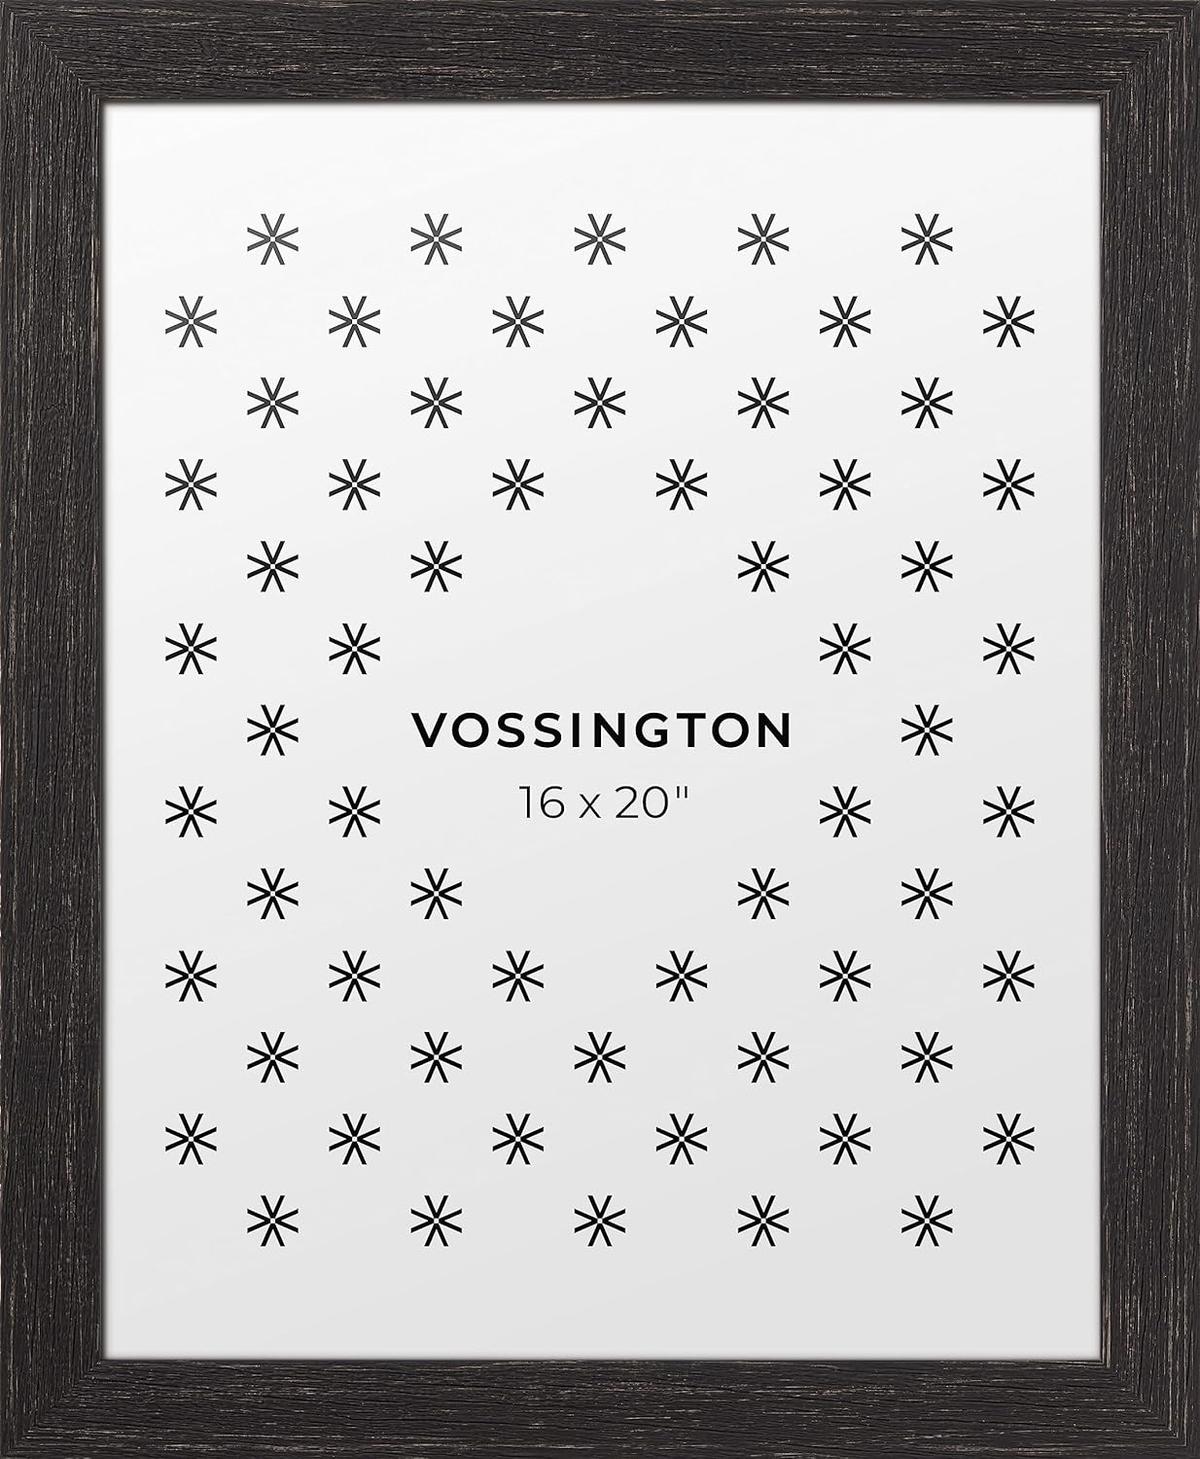 Vossington 16x20 Picture Frame, Distressed Black Frame Color, (Faux Wood Grain), Retail $45.00